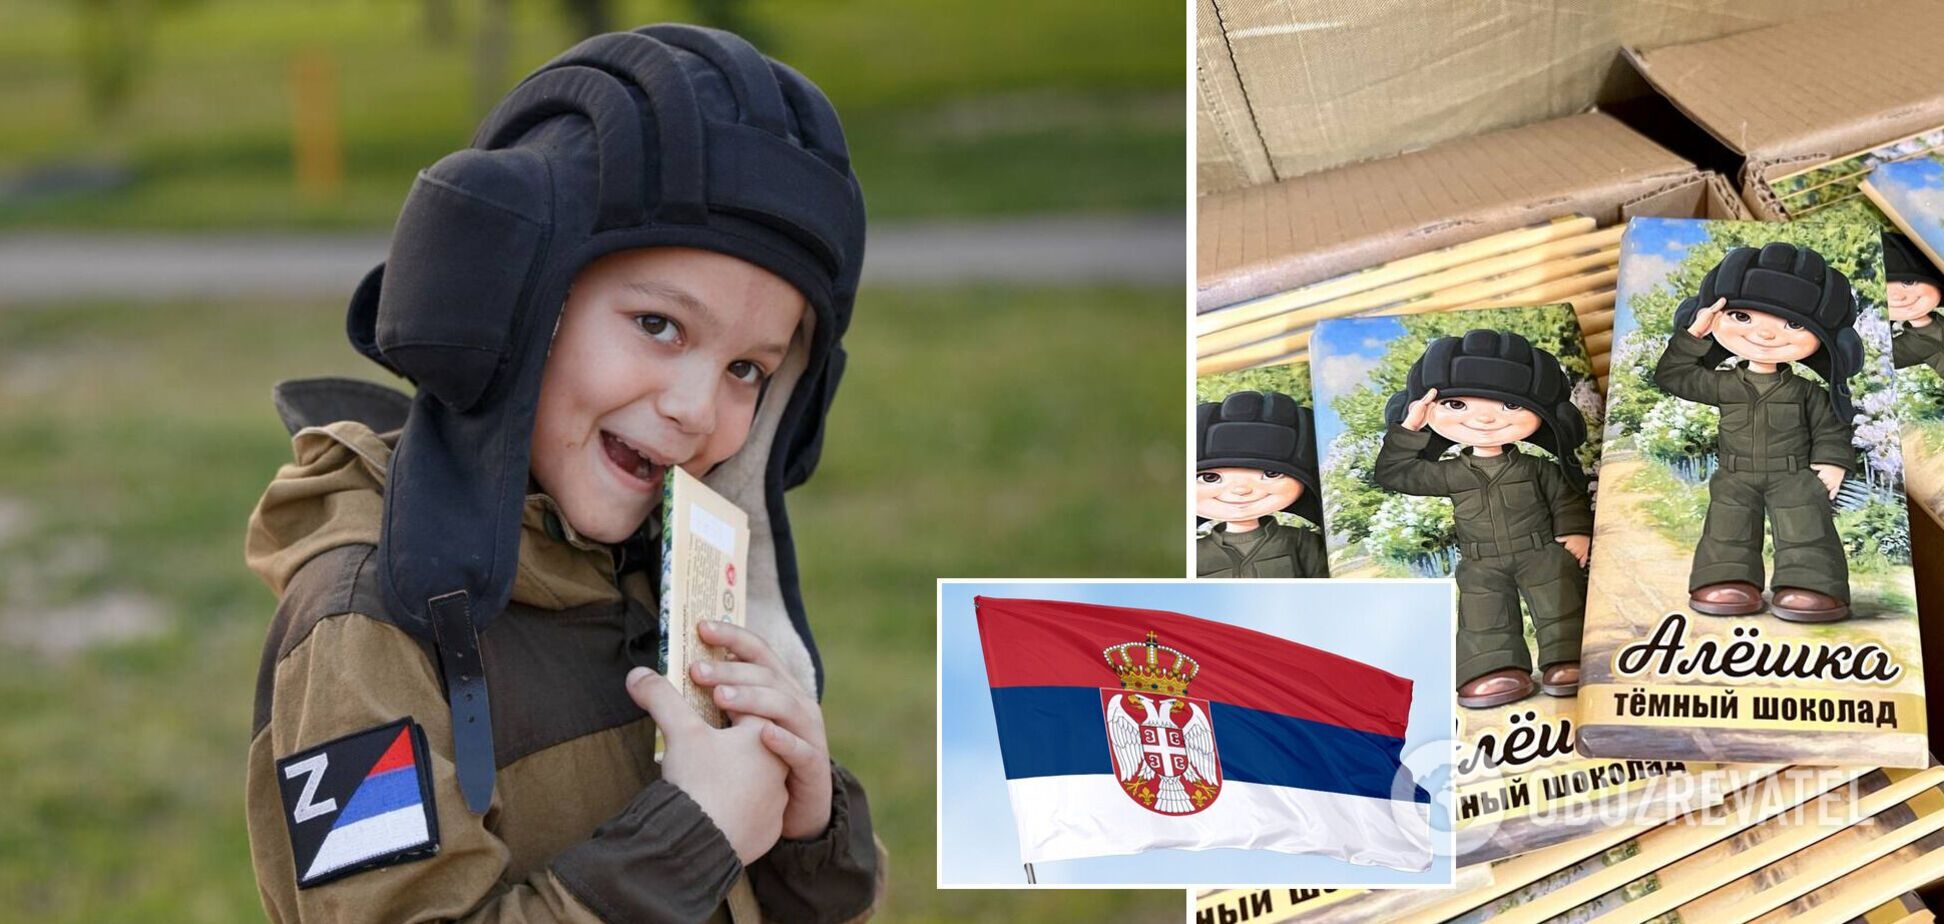 Прапор Сербії та символ Z. У Росії зганьбилися рекламою шоколаду 'Альошка' з хлопчиком у військовій формі